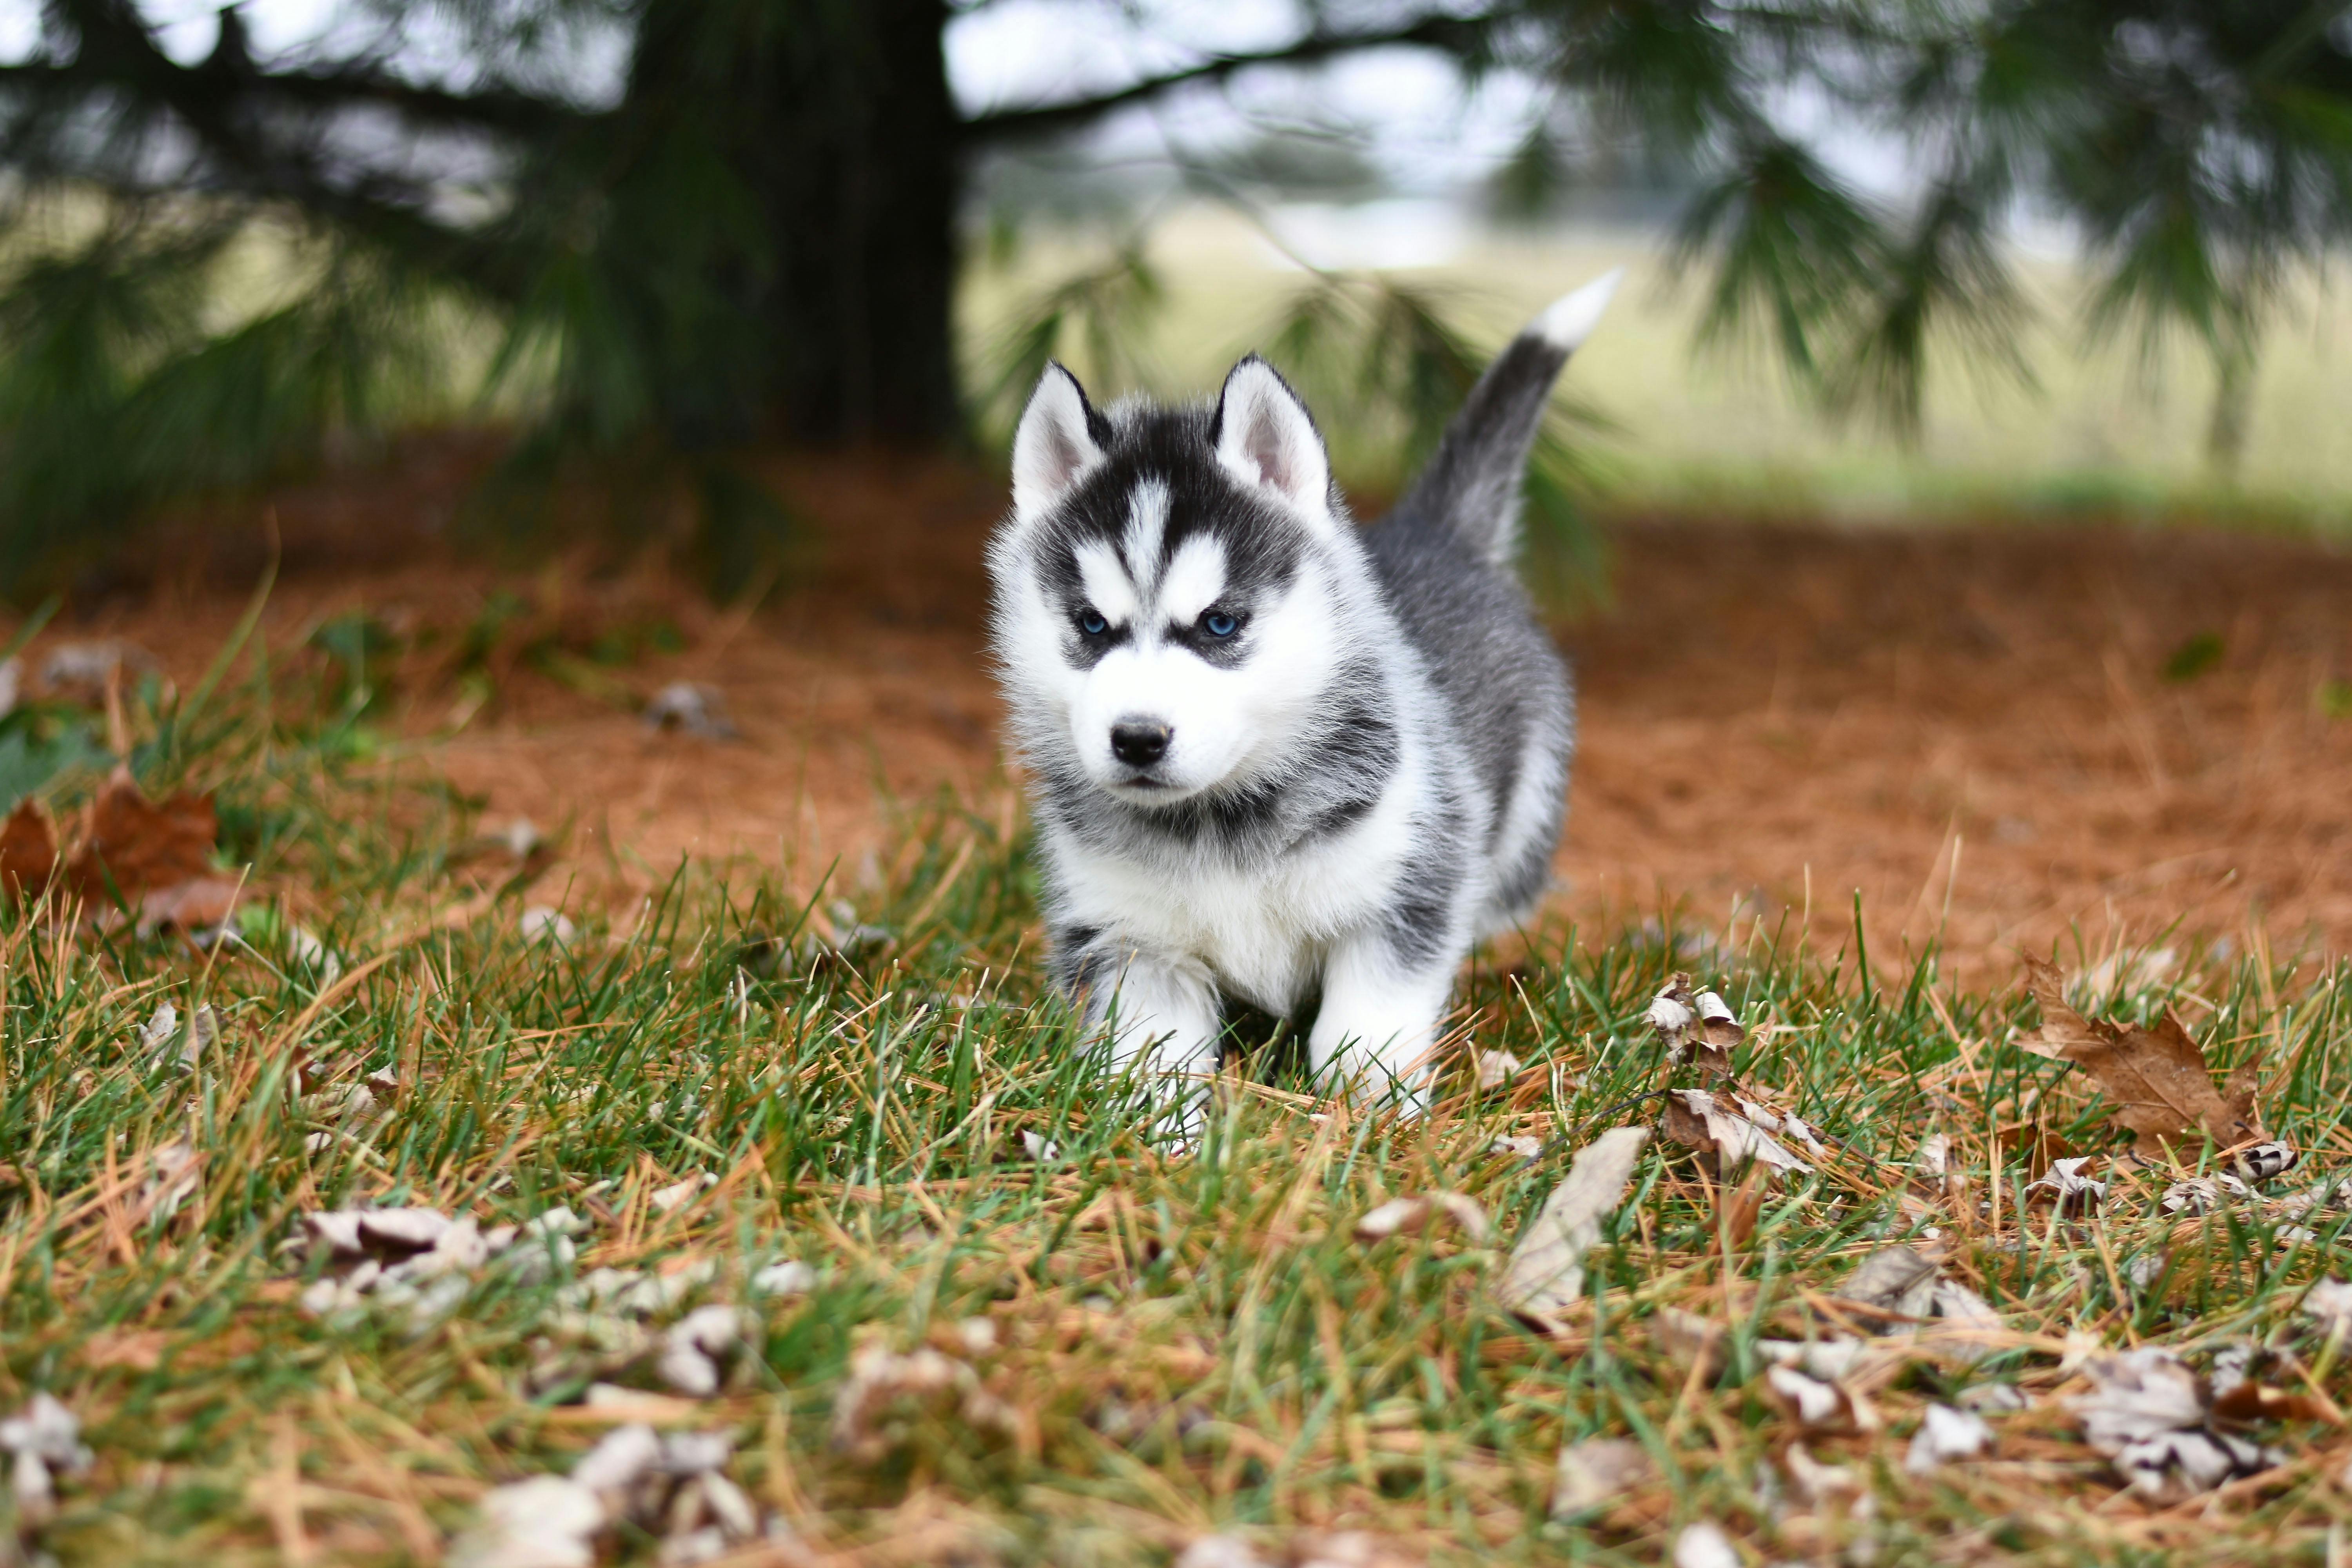 Siberian Husky Photos, Download Free